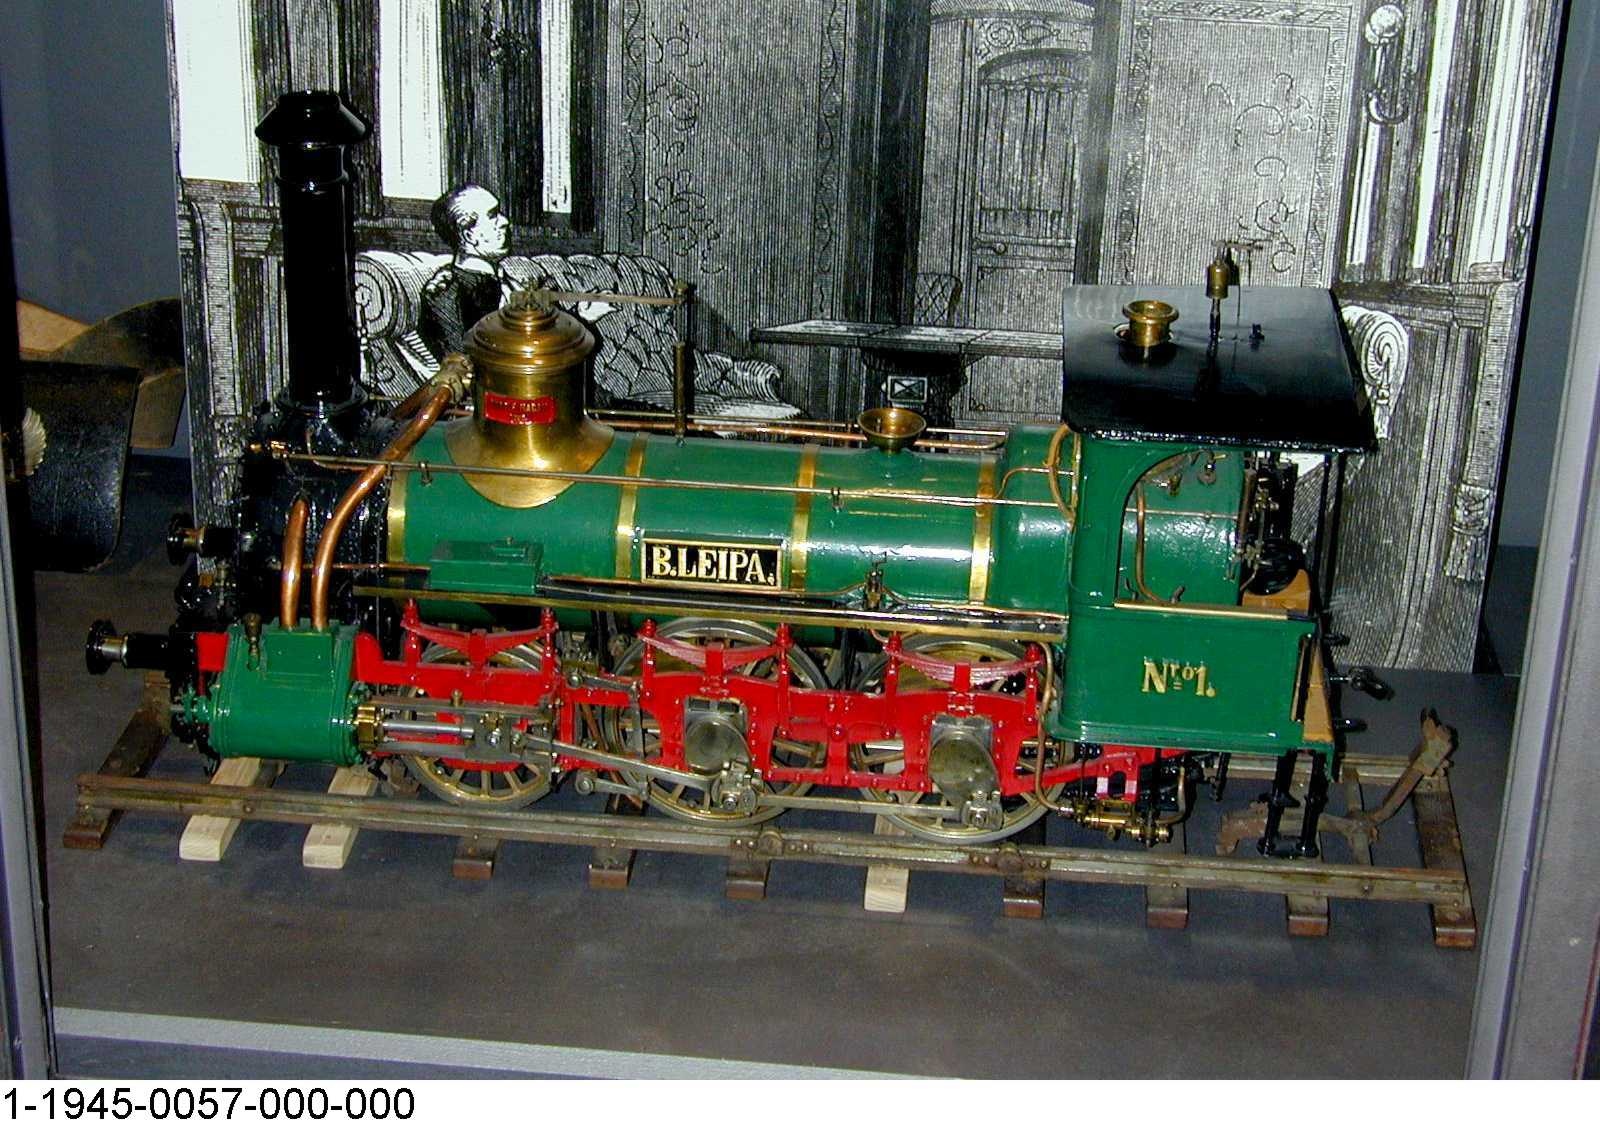 Schnellzuglok "B.LEIPA" der Böhmischen Nordbahn, Modell 1:12 (Stiftung Deutsches Technikmuseum Berlin CC0)